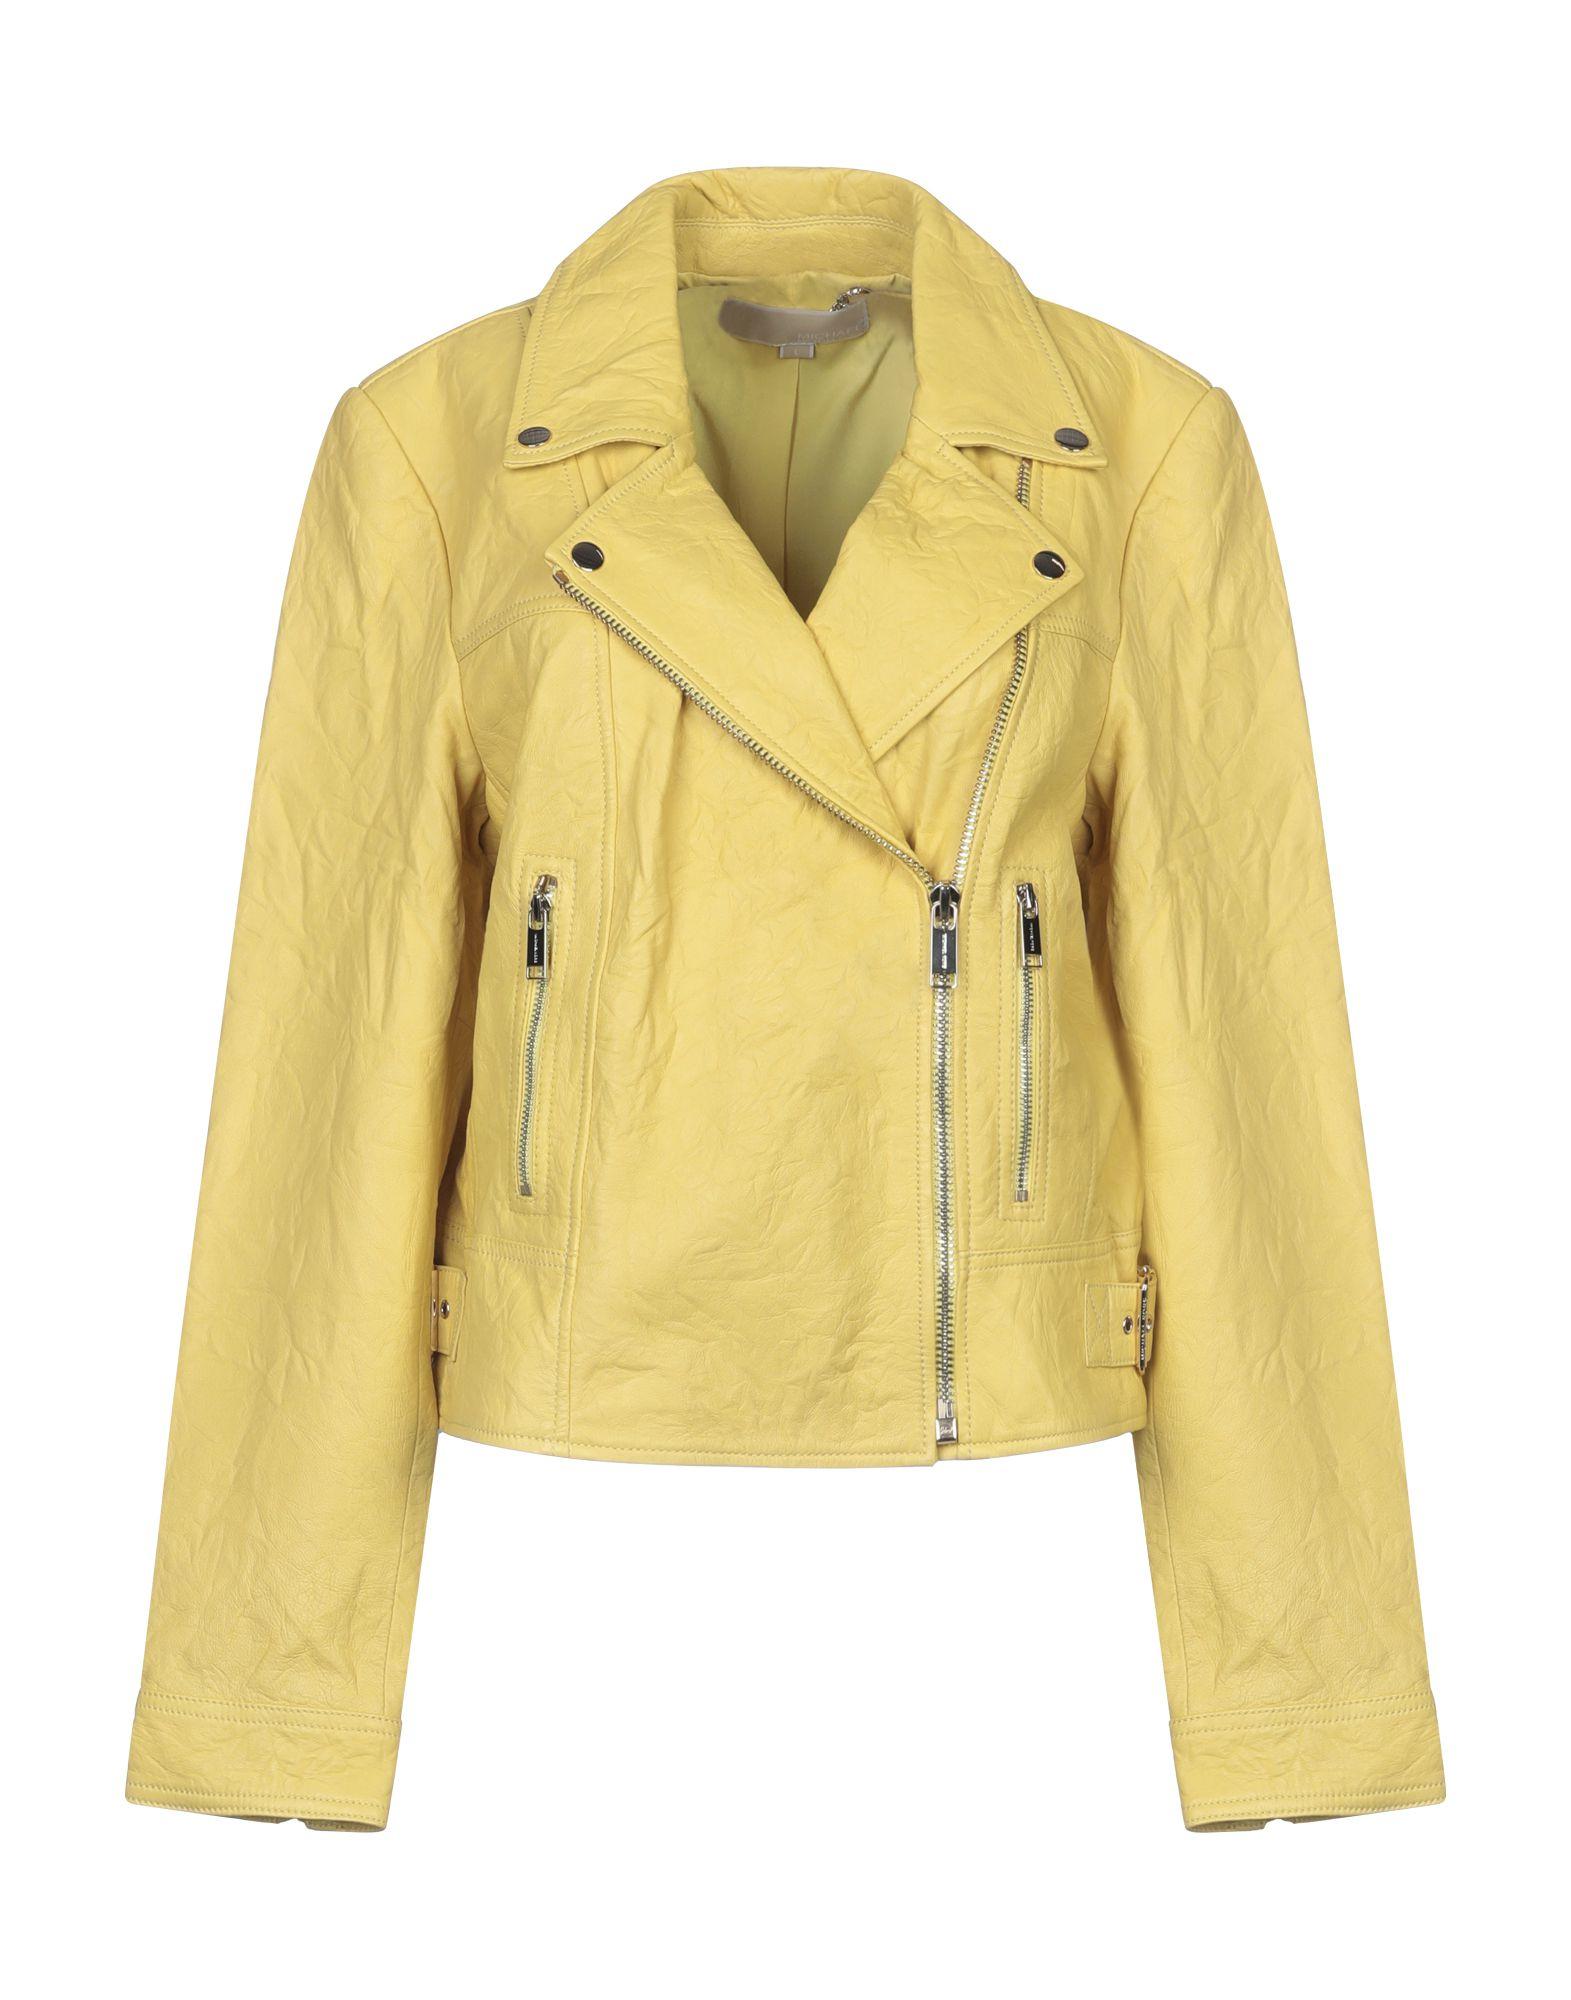 michael kors yellow leather jacket